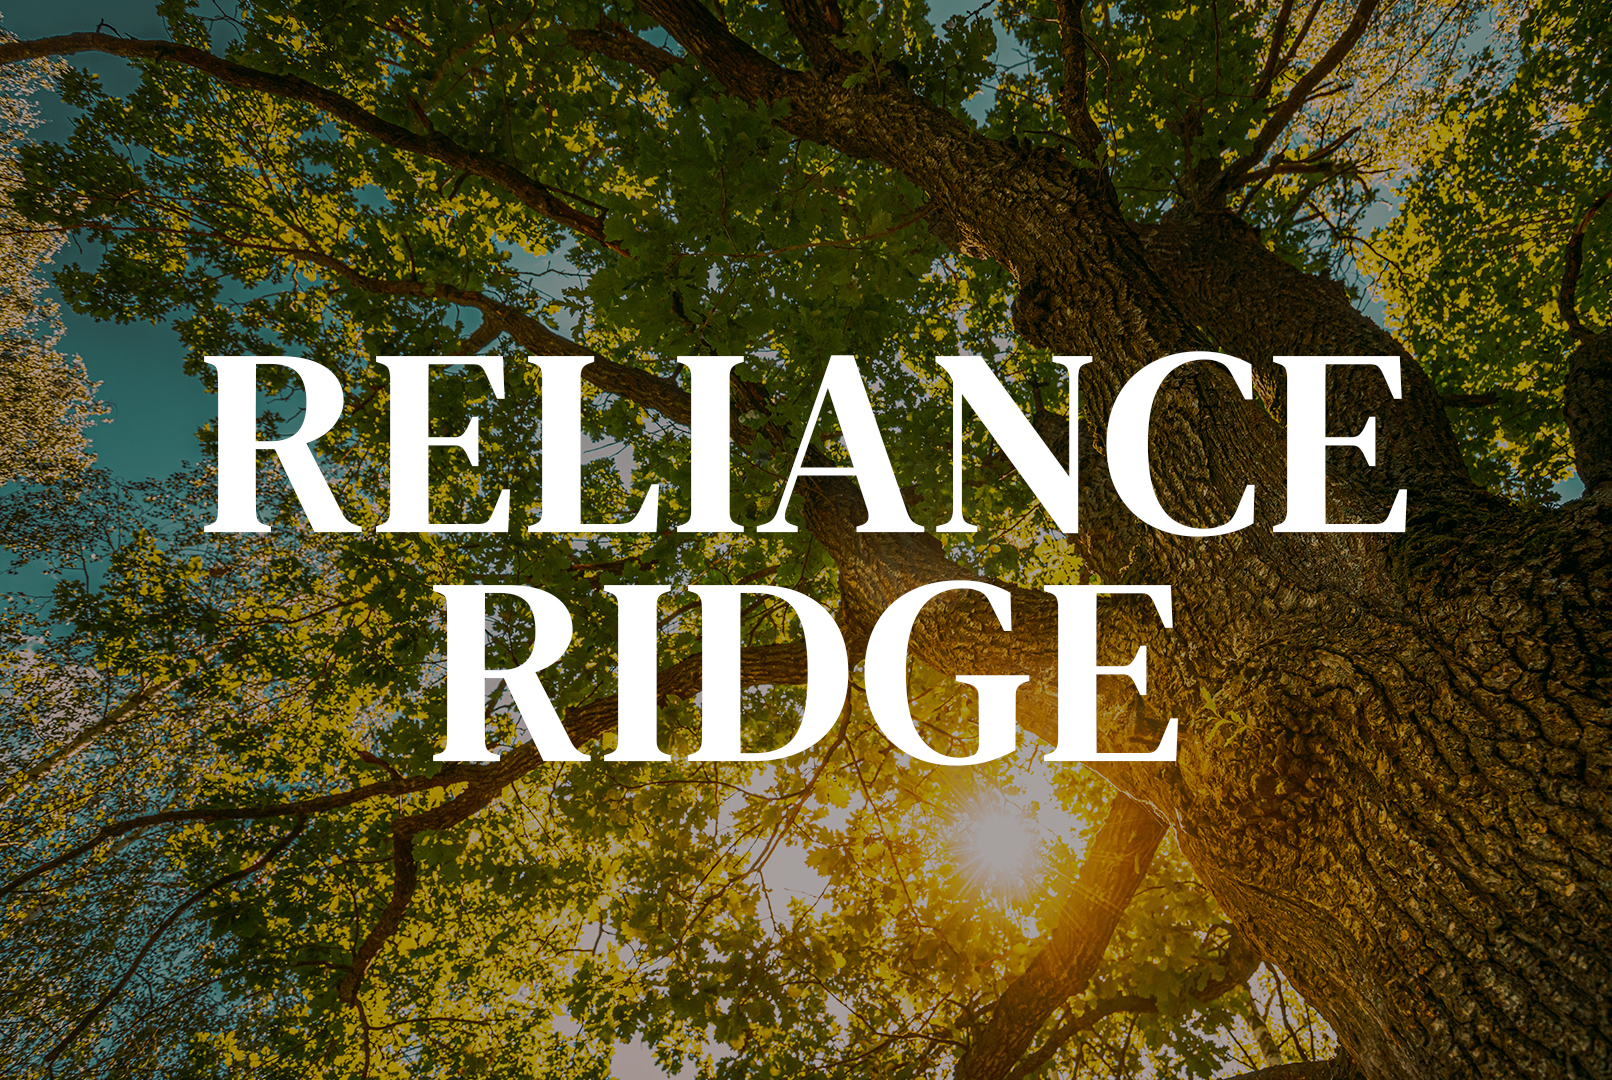 Reliance Ridge